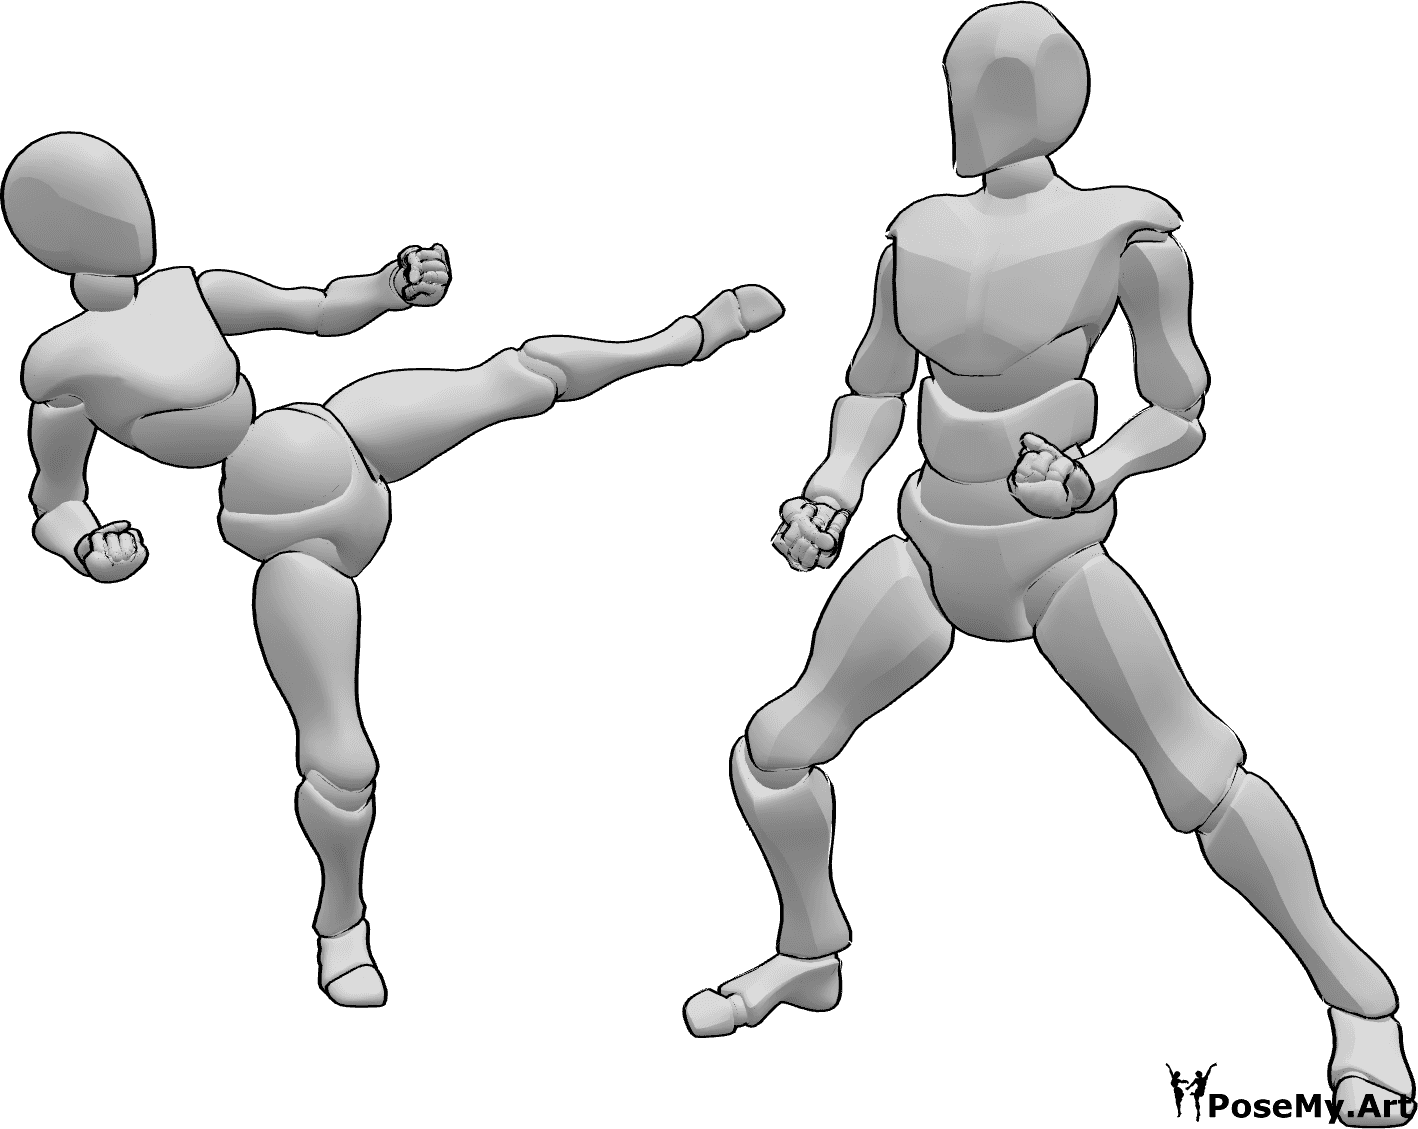 Riferimento alle pose- Posa di karate femminile maschile - Donna e uomo combattono, in posa da karateka